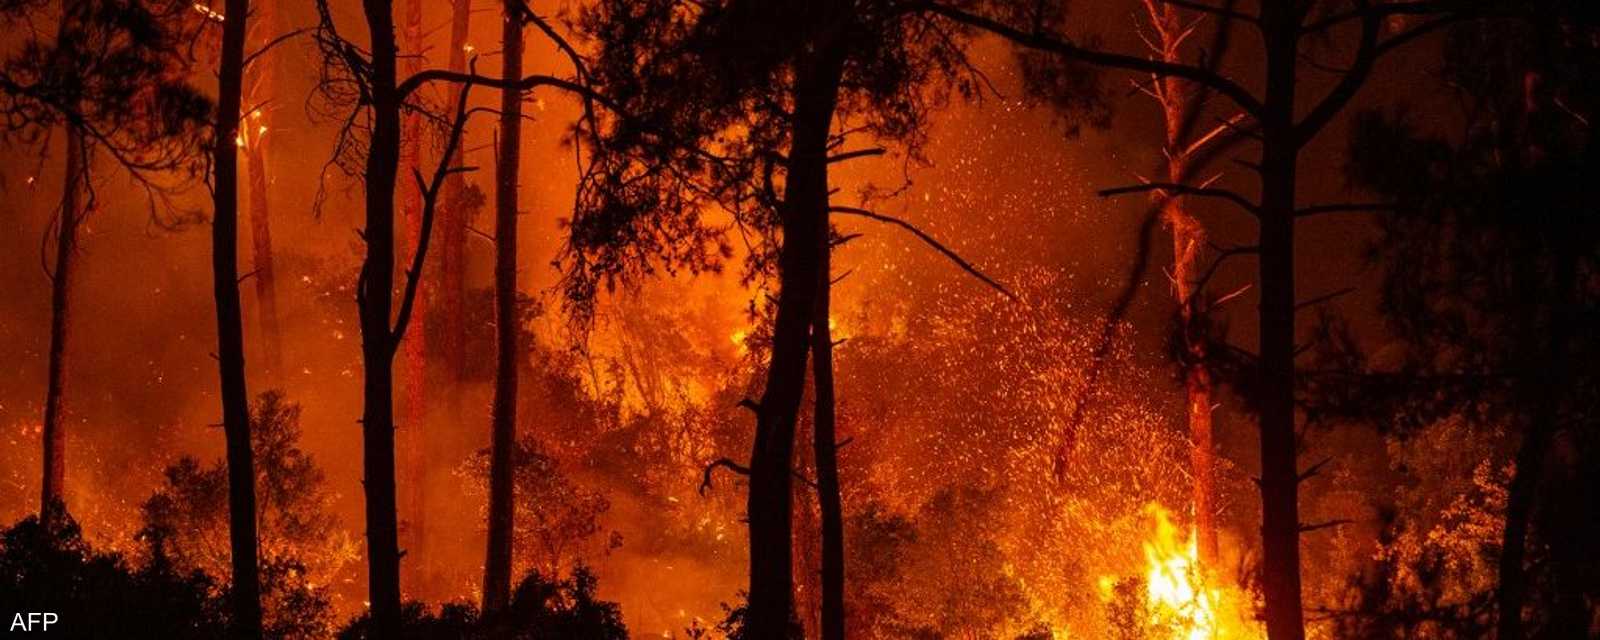 في واحدة من أسوأ الكوارث البيئية على الإطلاق، يتواصل اندلاع حرائق الغابات في منطقة شرق البحر المتوسط، من تركيا إلى اليونان وإيطاليا.